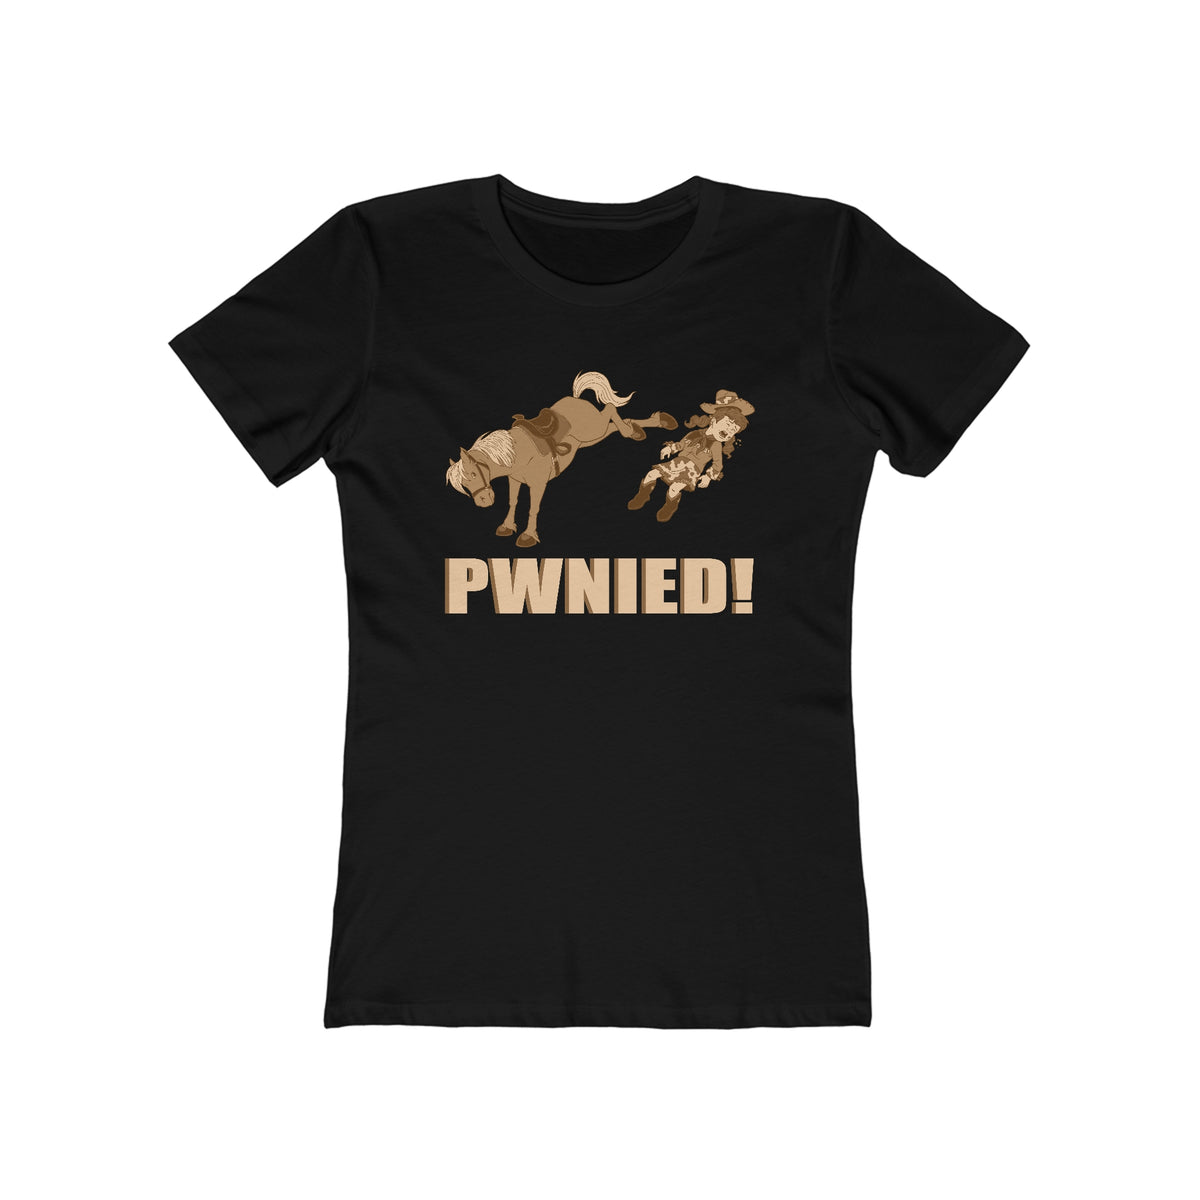 Pwnied! - Women’s T-Shirt